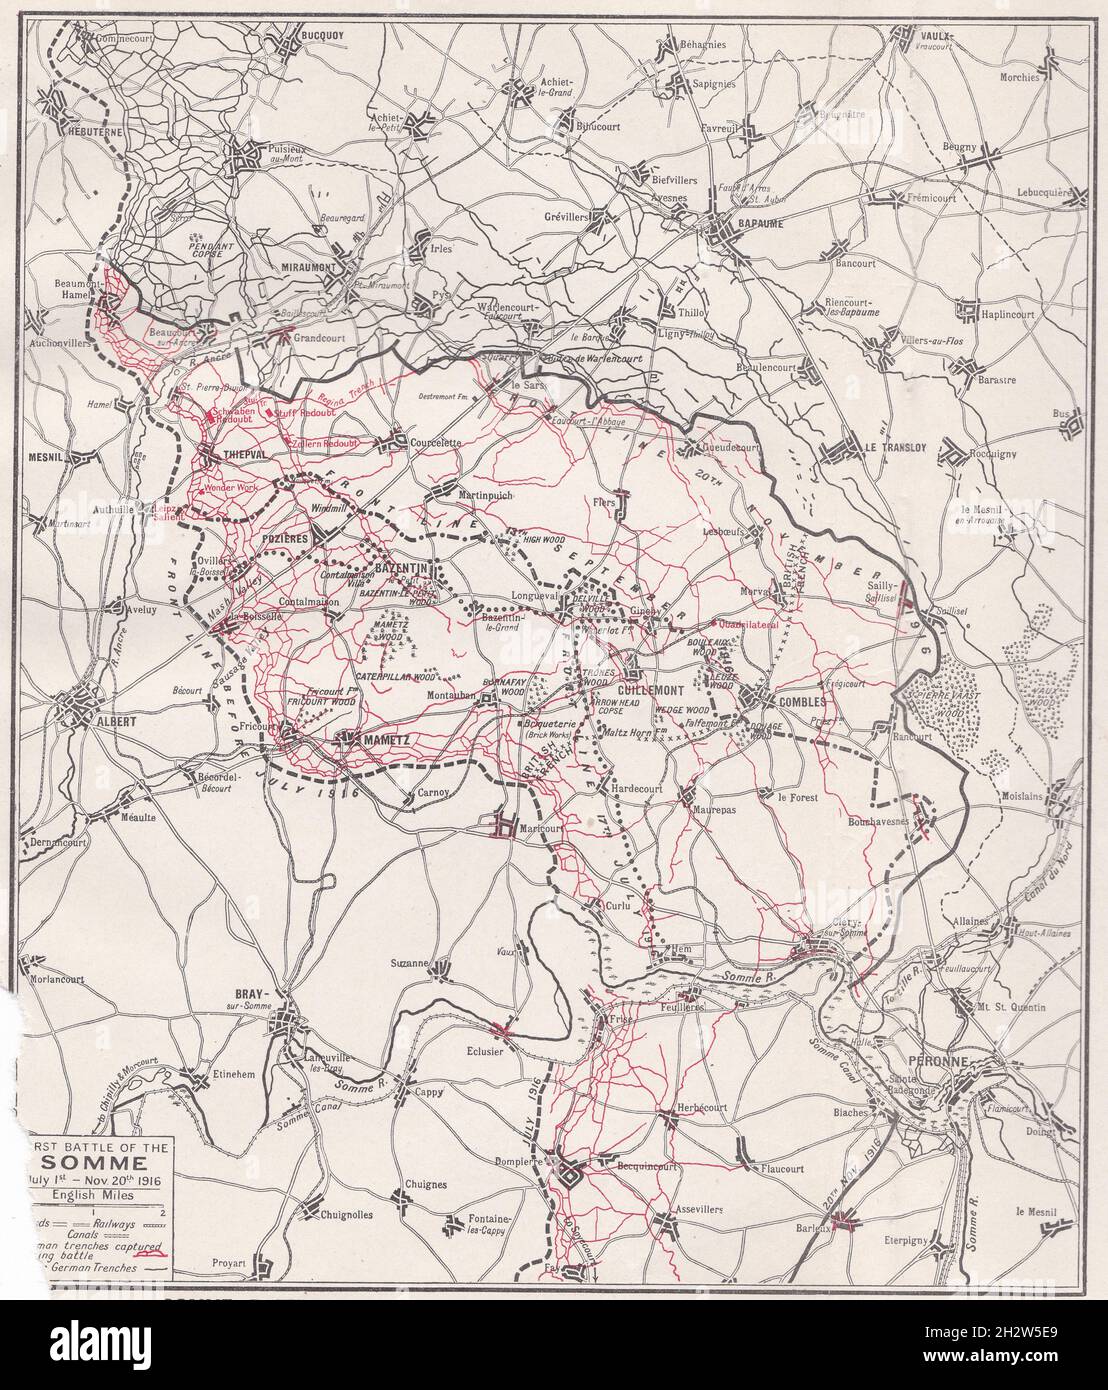 Carte vintage de la bataille de la somme - territoire gagné par les alliés  et les Allemands respectivement dans les deux batailles de la somme pendant  la Grande Guerre 1916 Photo Stock - Alamy